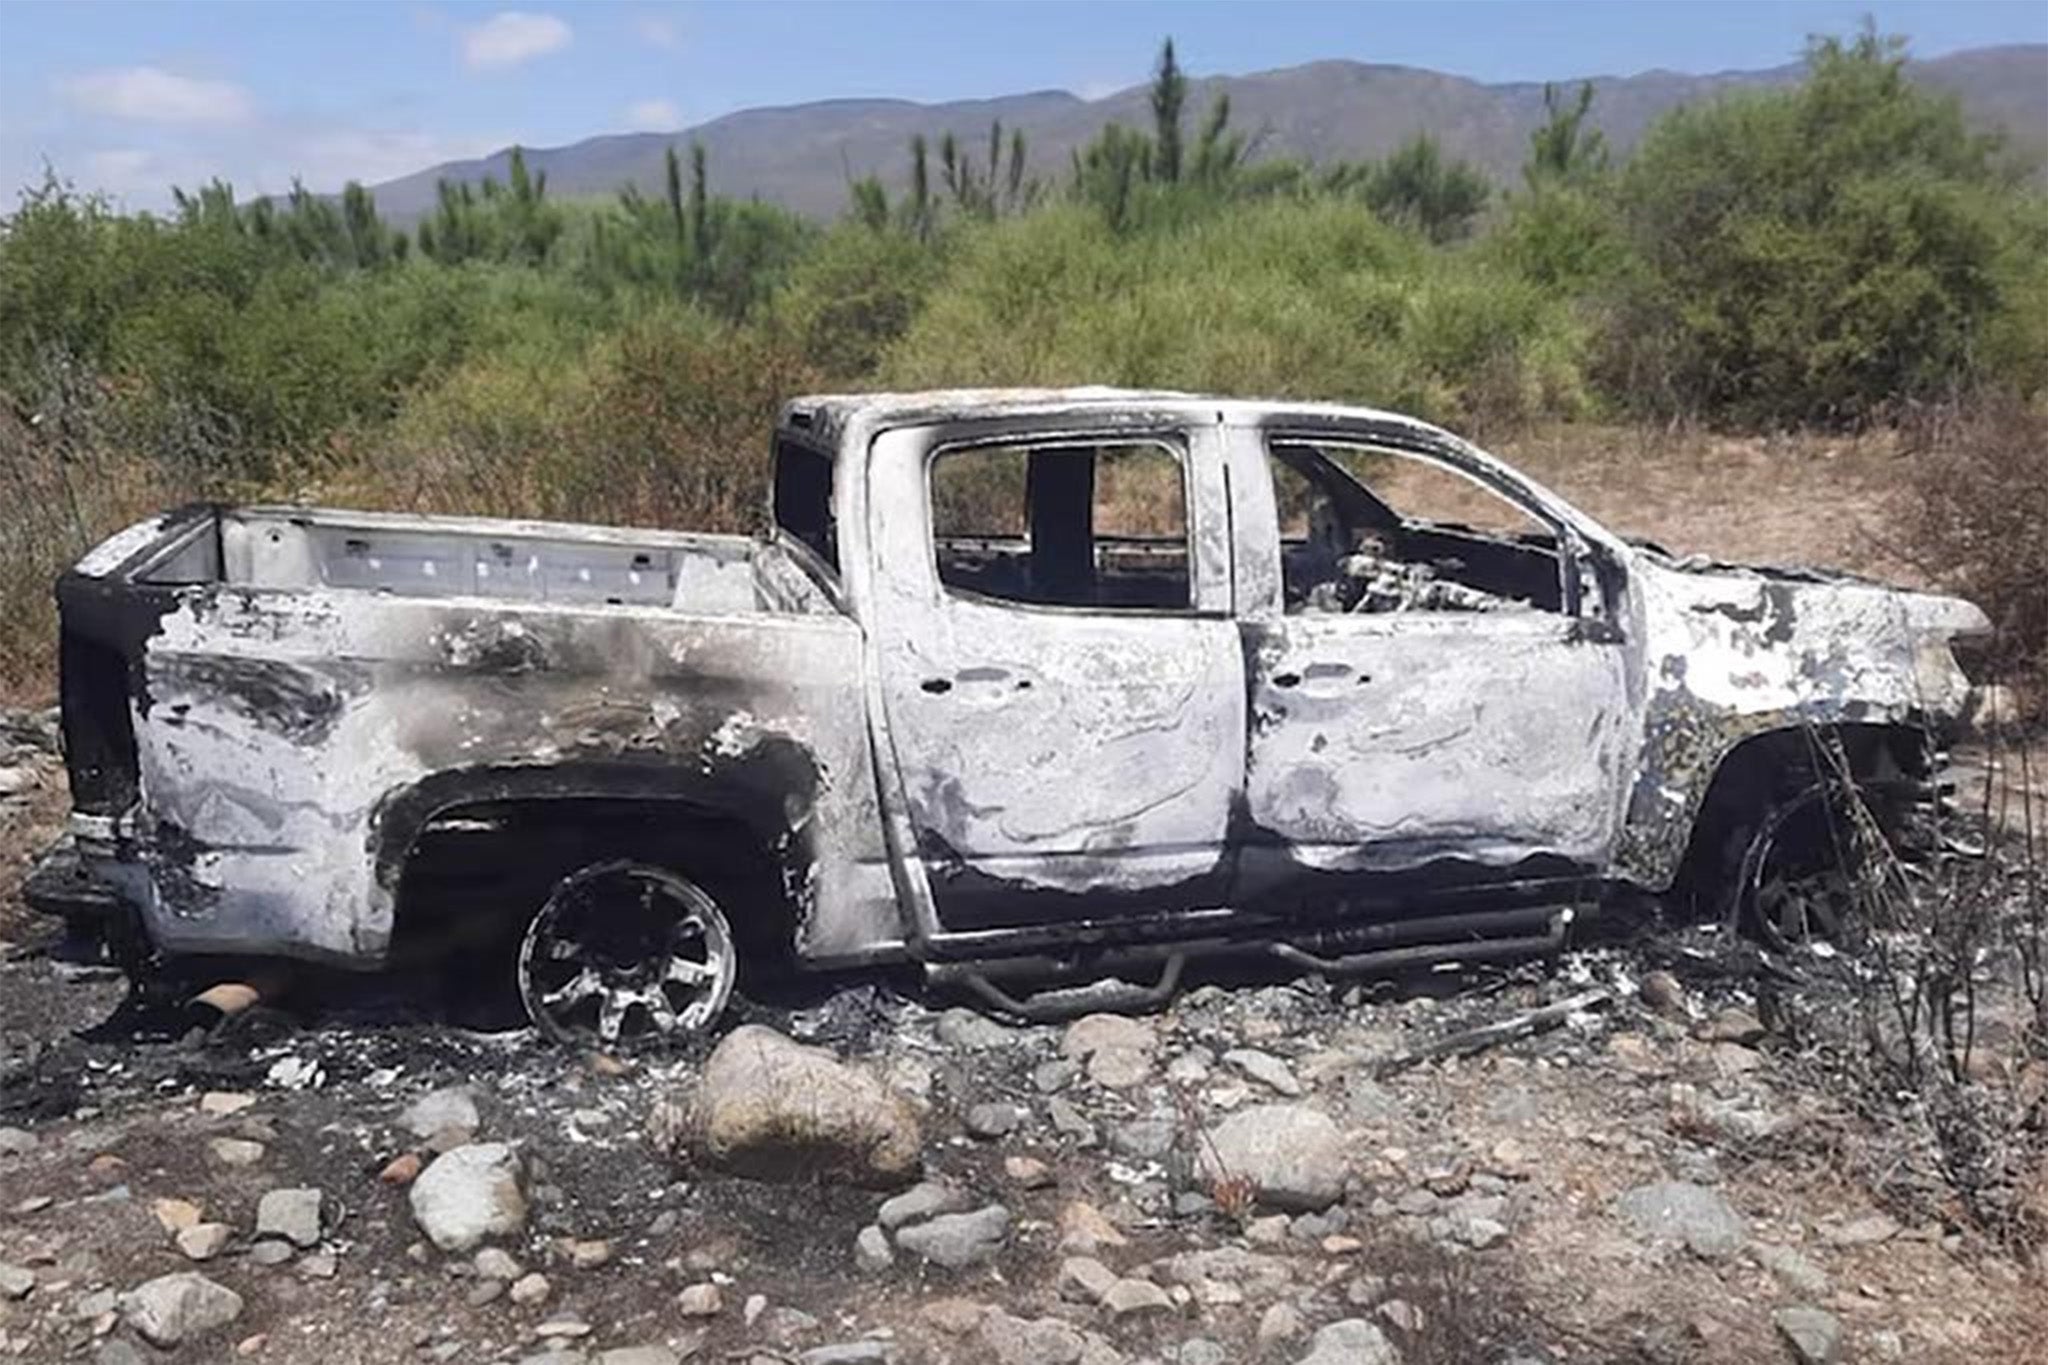 Las autoridades alegan que los ladrones eligieron a los surfistas por los neumáticos de su camioneta, que fue encontrada quemada